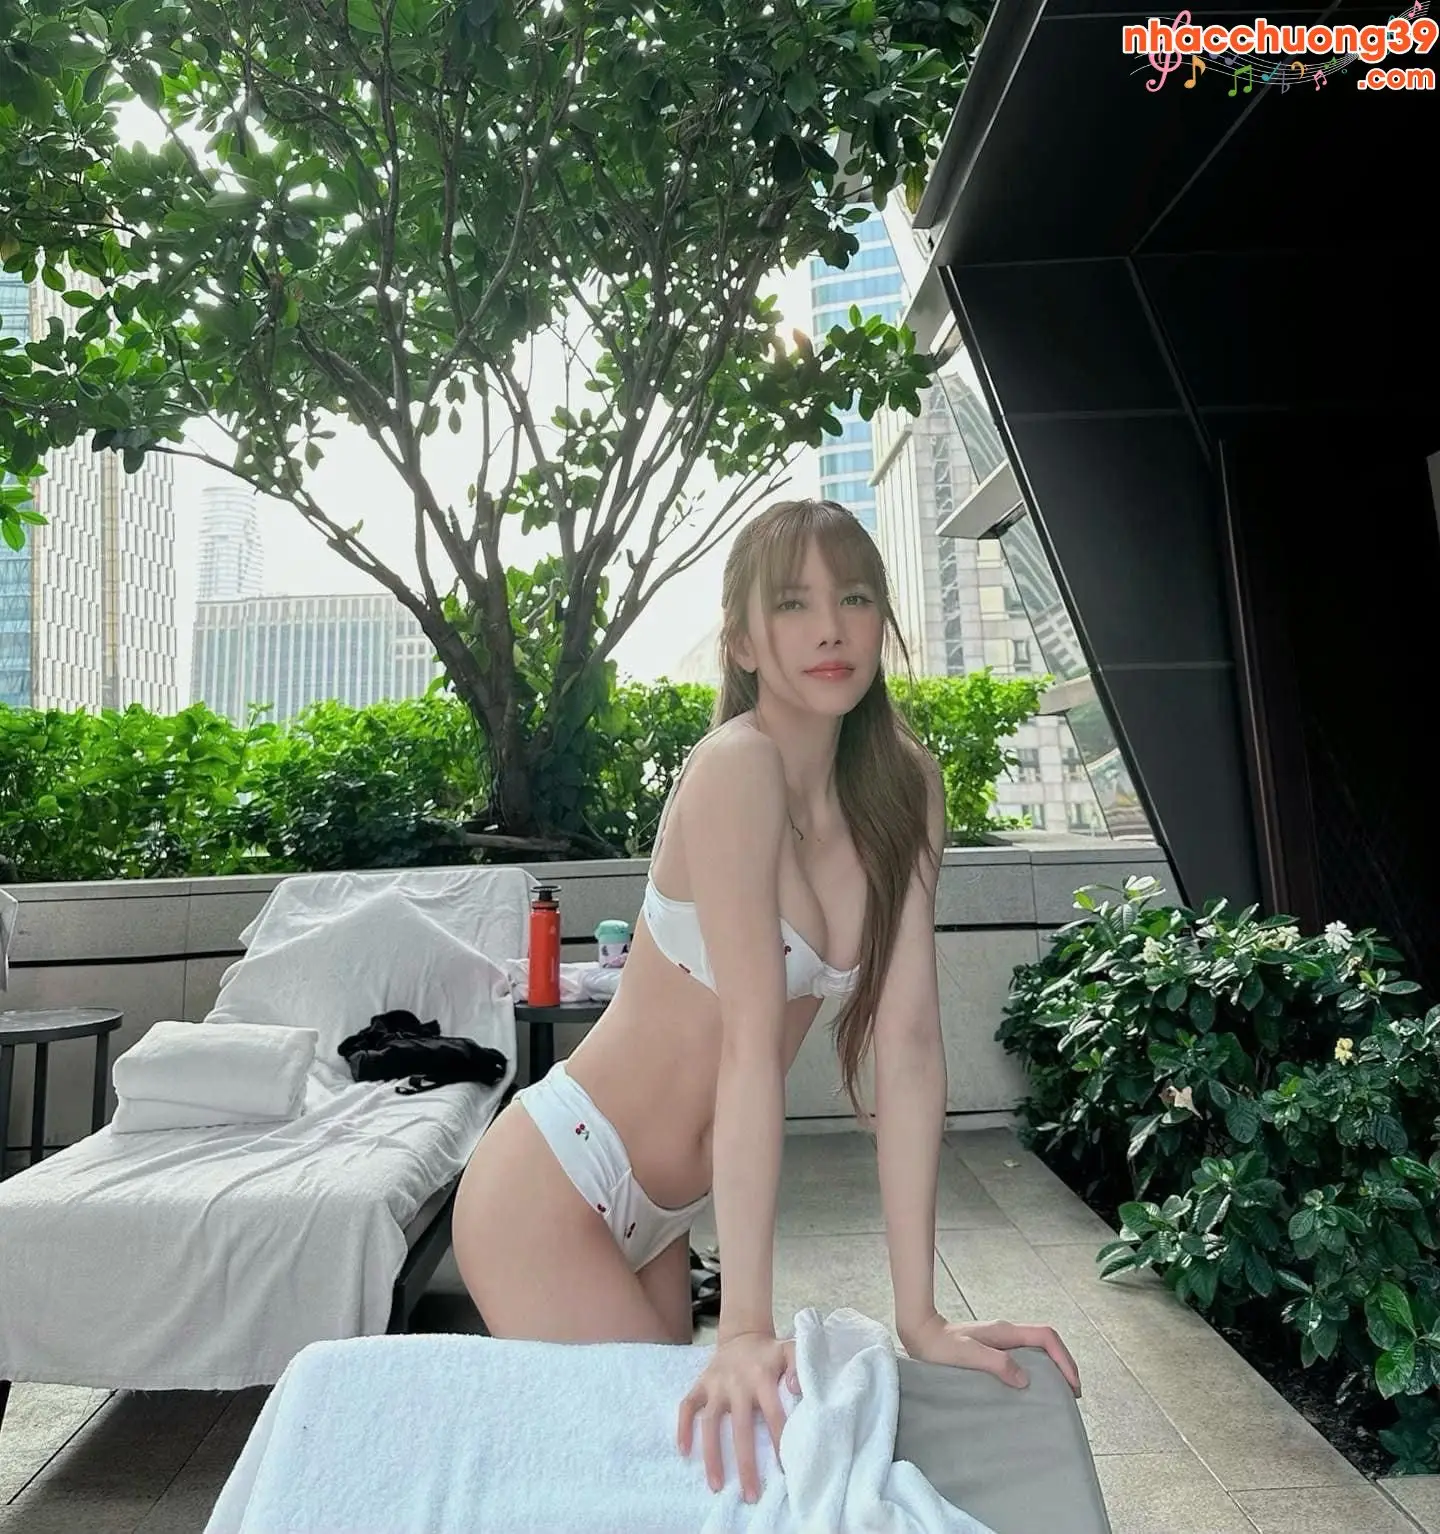 Thieu Bao Tram bikini